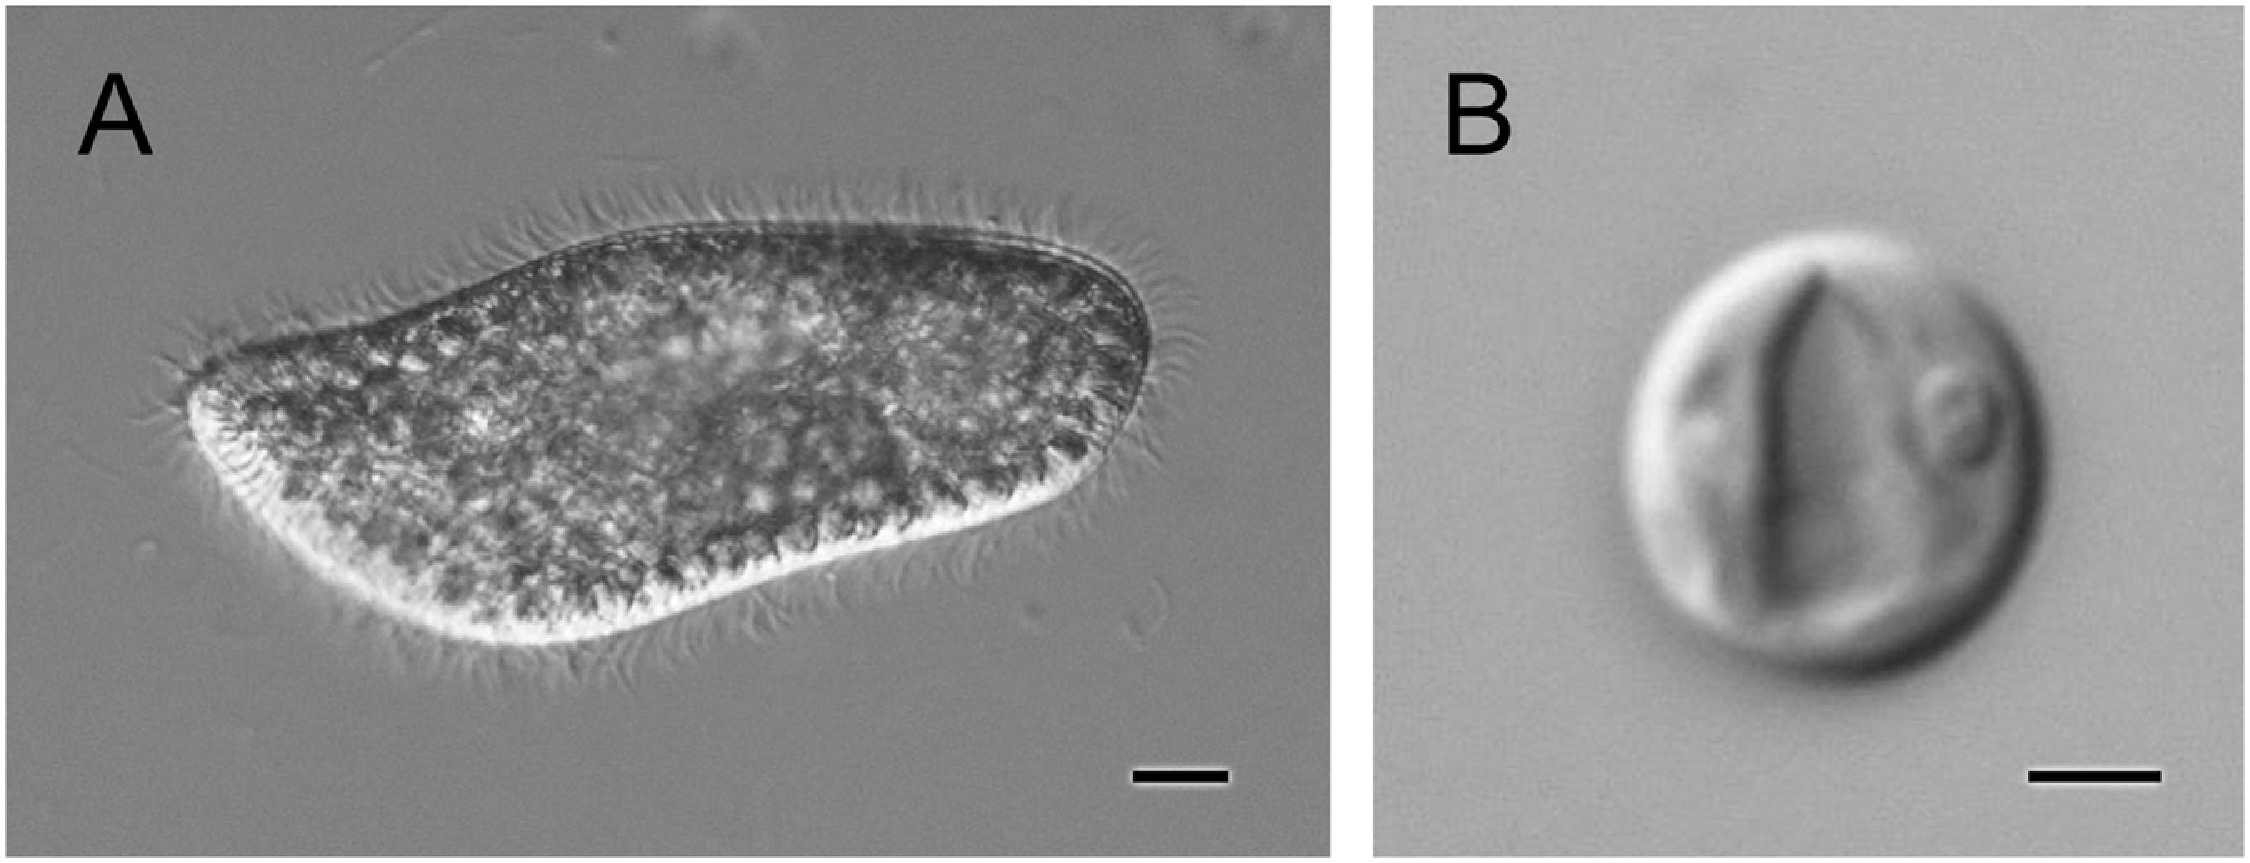 ミドリゾウリムシ共生藻の細胞壁の厚さや化学組成は 単独培養時と共生時で変化することを明らかに 長浜バイオ大学